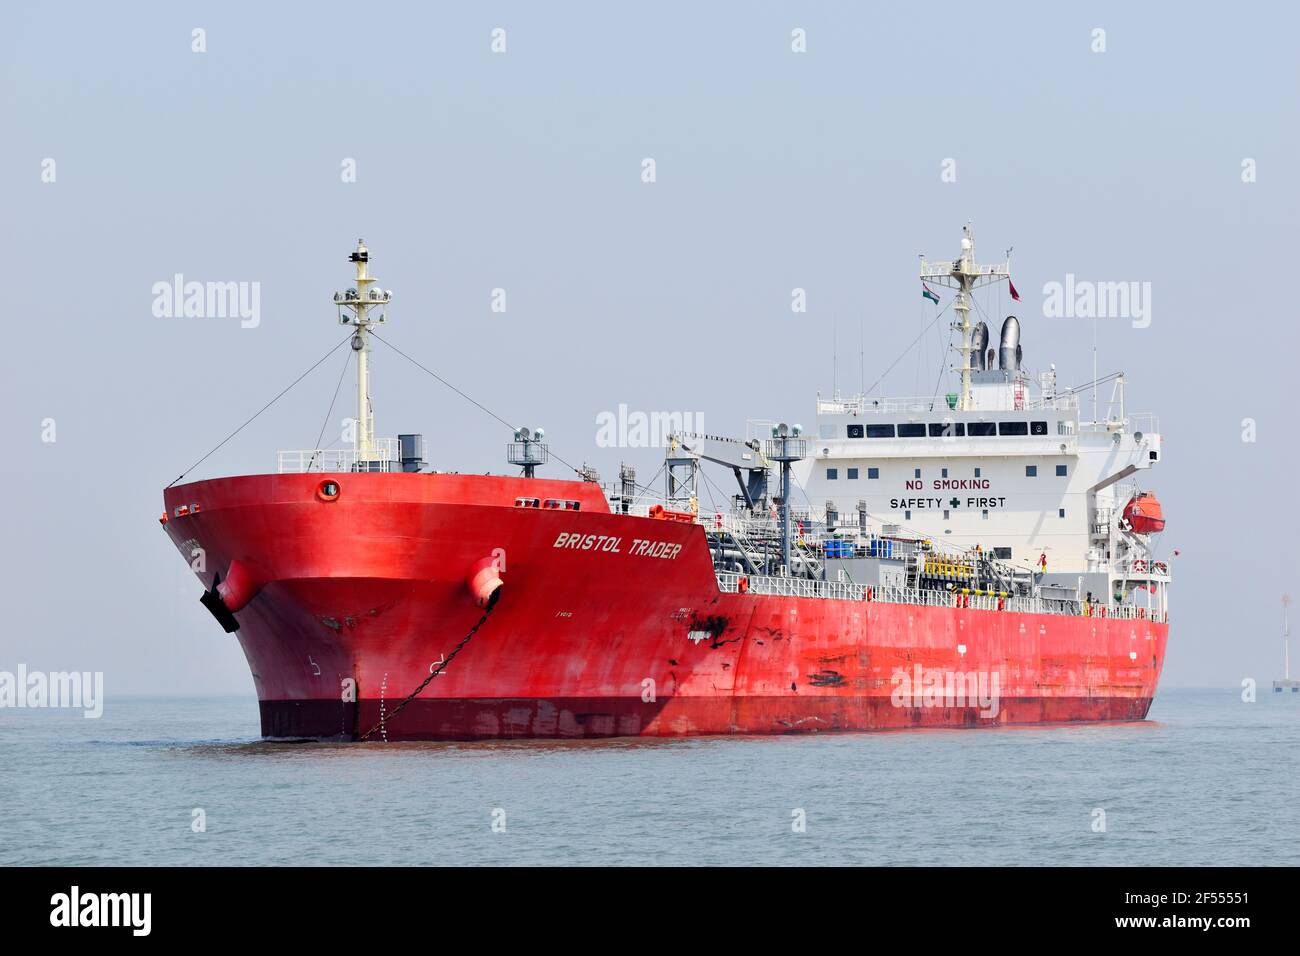 13 mars 2021, port de Mumbai, Maharashtra, Inde. BRISTOL TRADER un pétrolier / chimique Tanker amarré près du port de Mumbai Banque D'Images